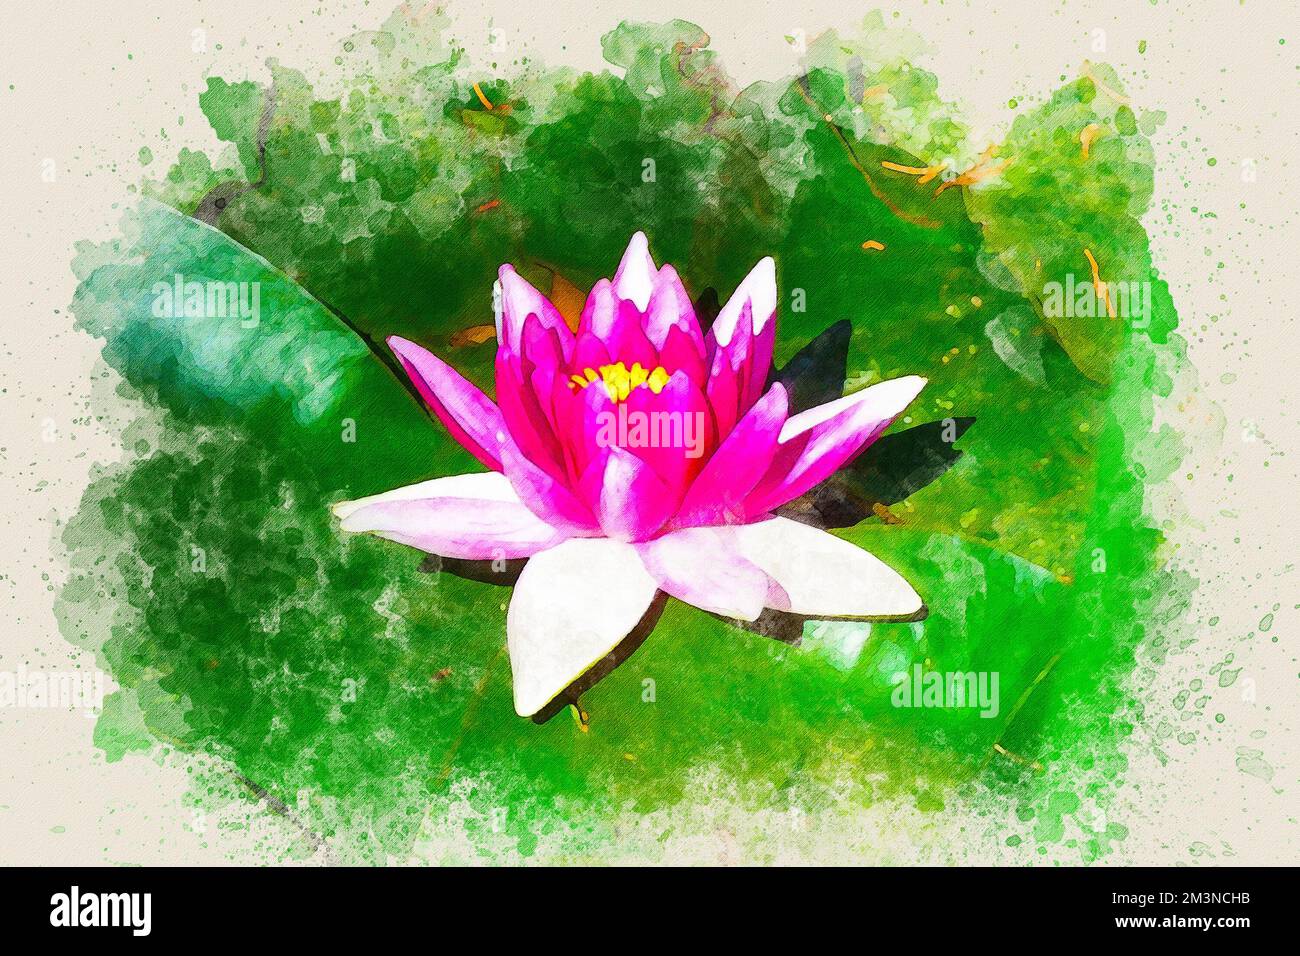 Peinture aquarelle d'une fleur rose de lotus ou de nénuphars sur fond vert. Banque D'Images